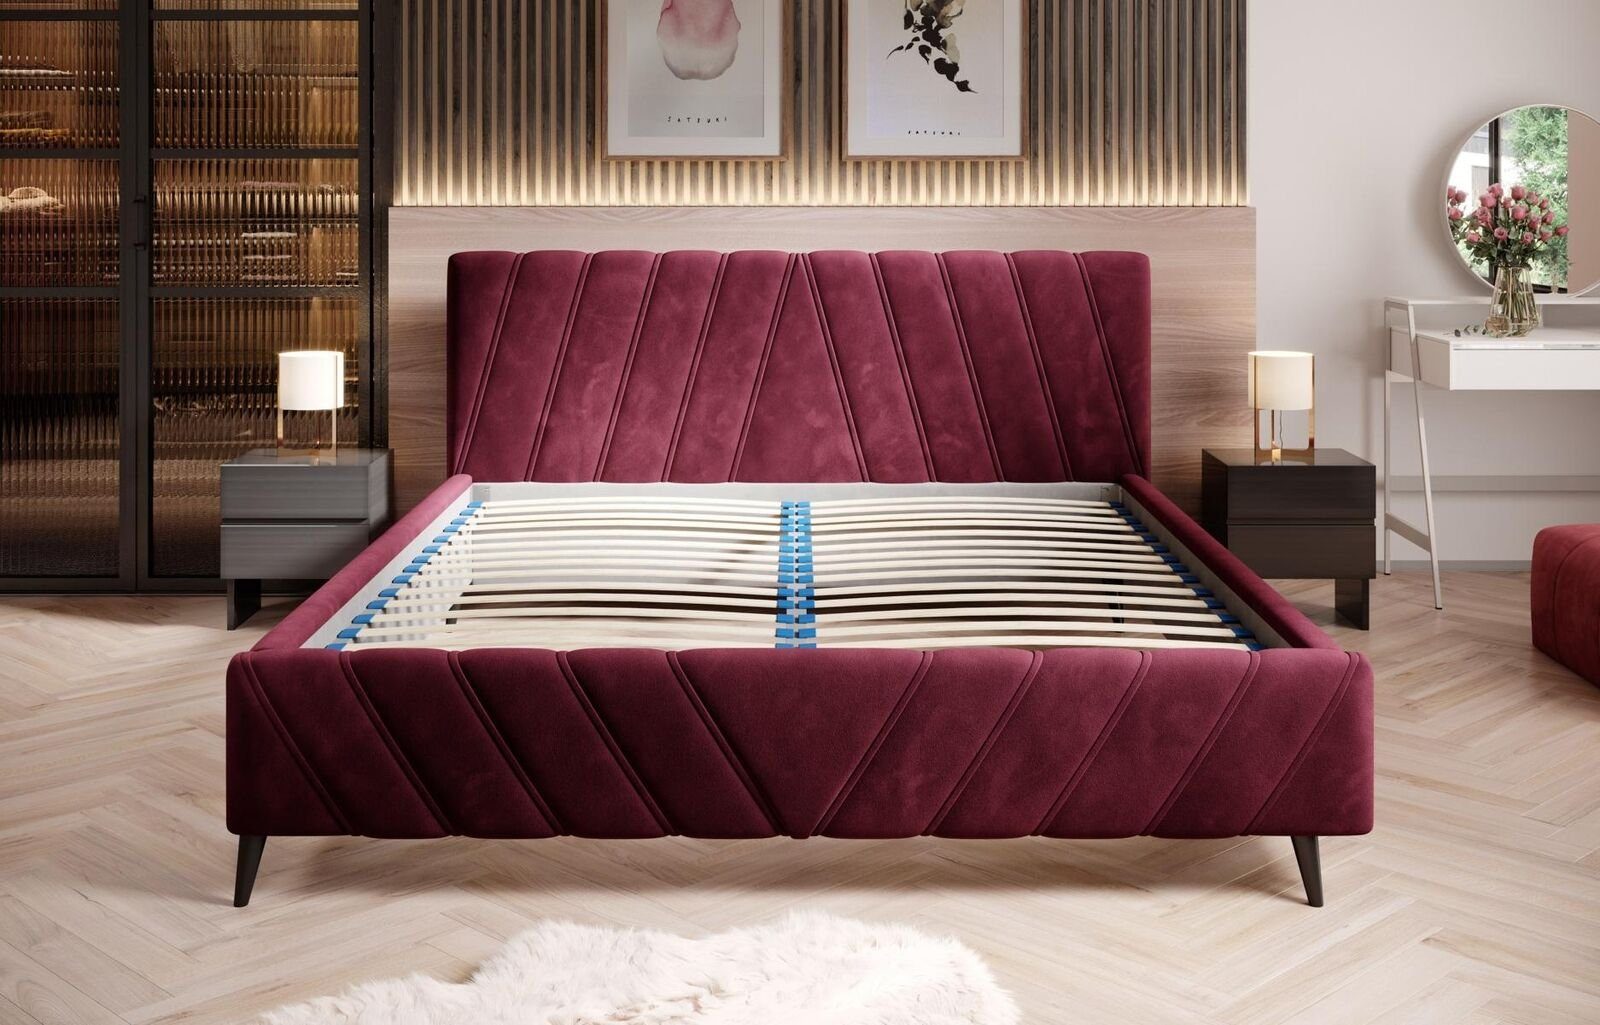 JVmoebel Bett, Luxus Bett Textil Design Hotel Betten Polster 180x200cm